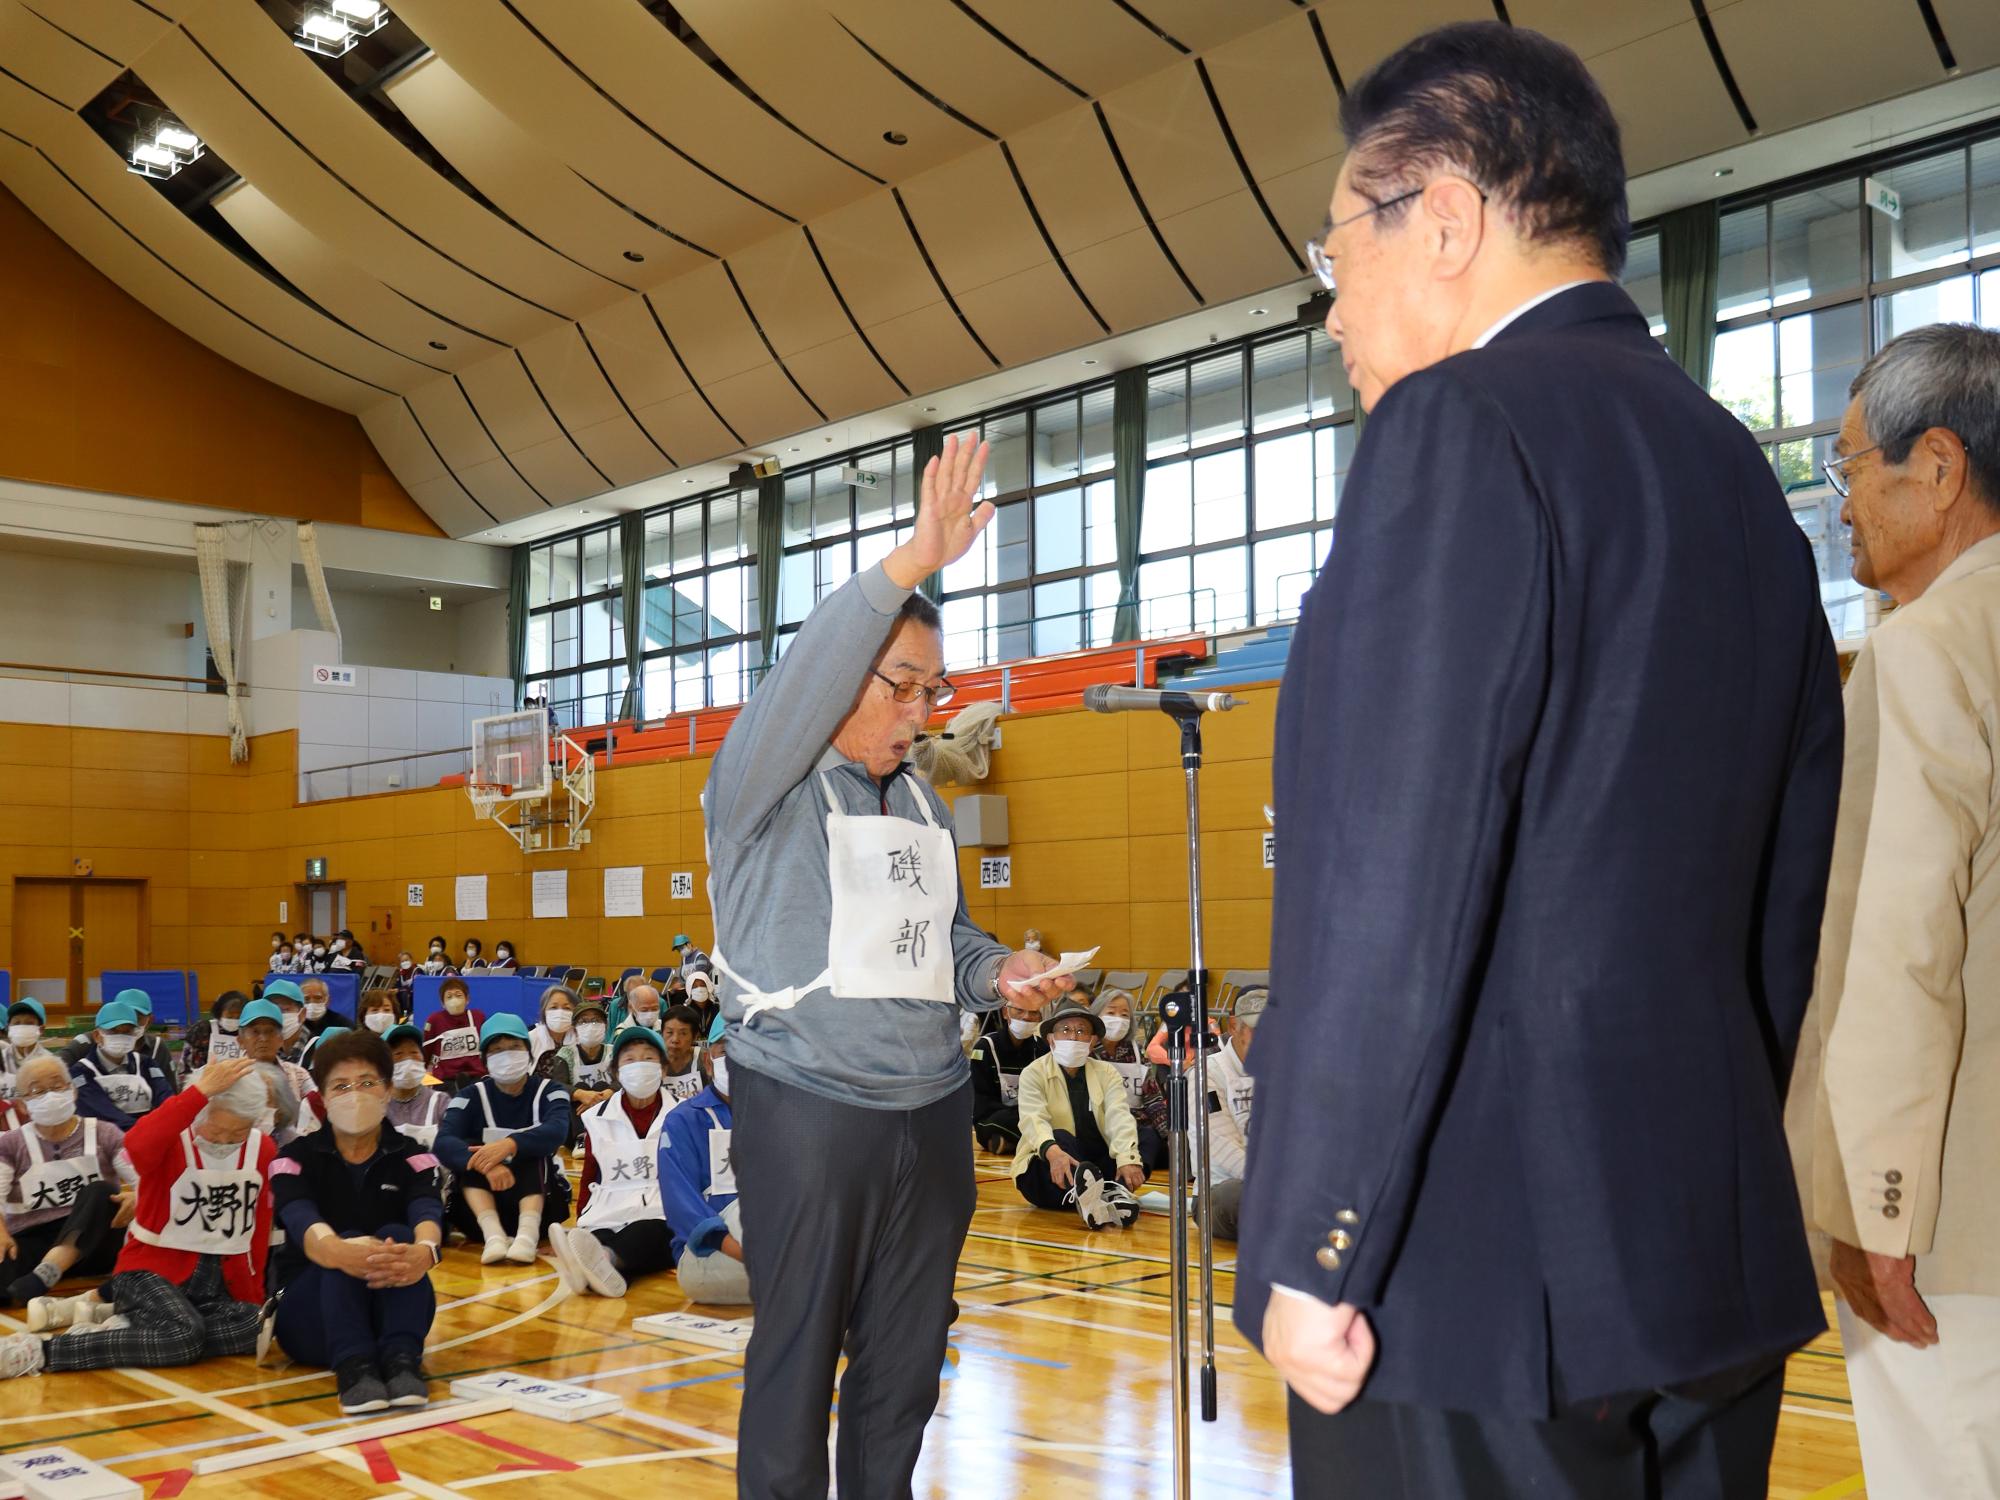 高齢者スポーツ大会で、選手宣誓をする佐藤一義さんの様子